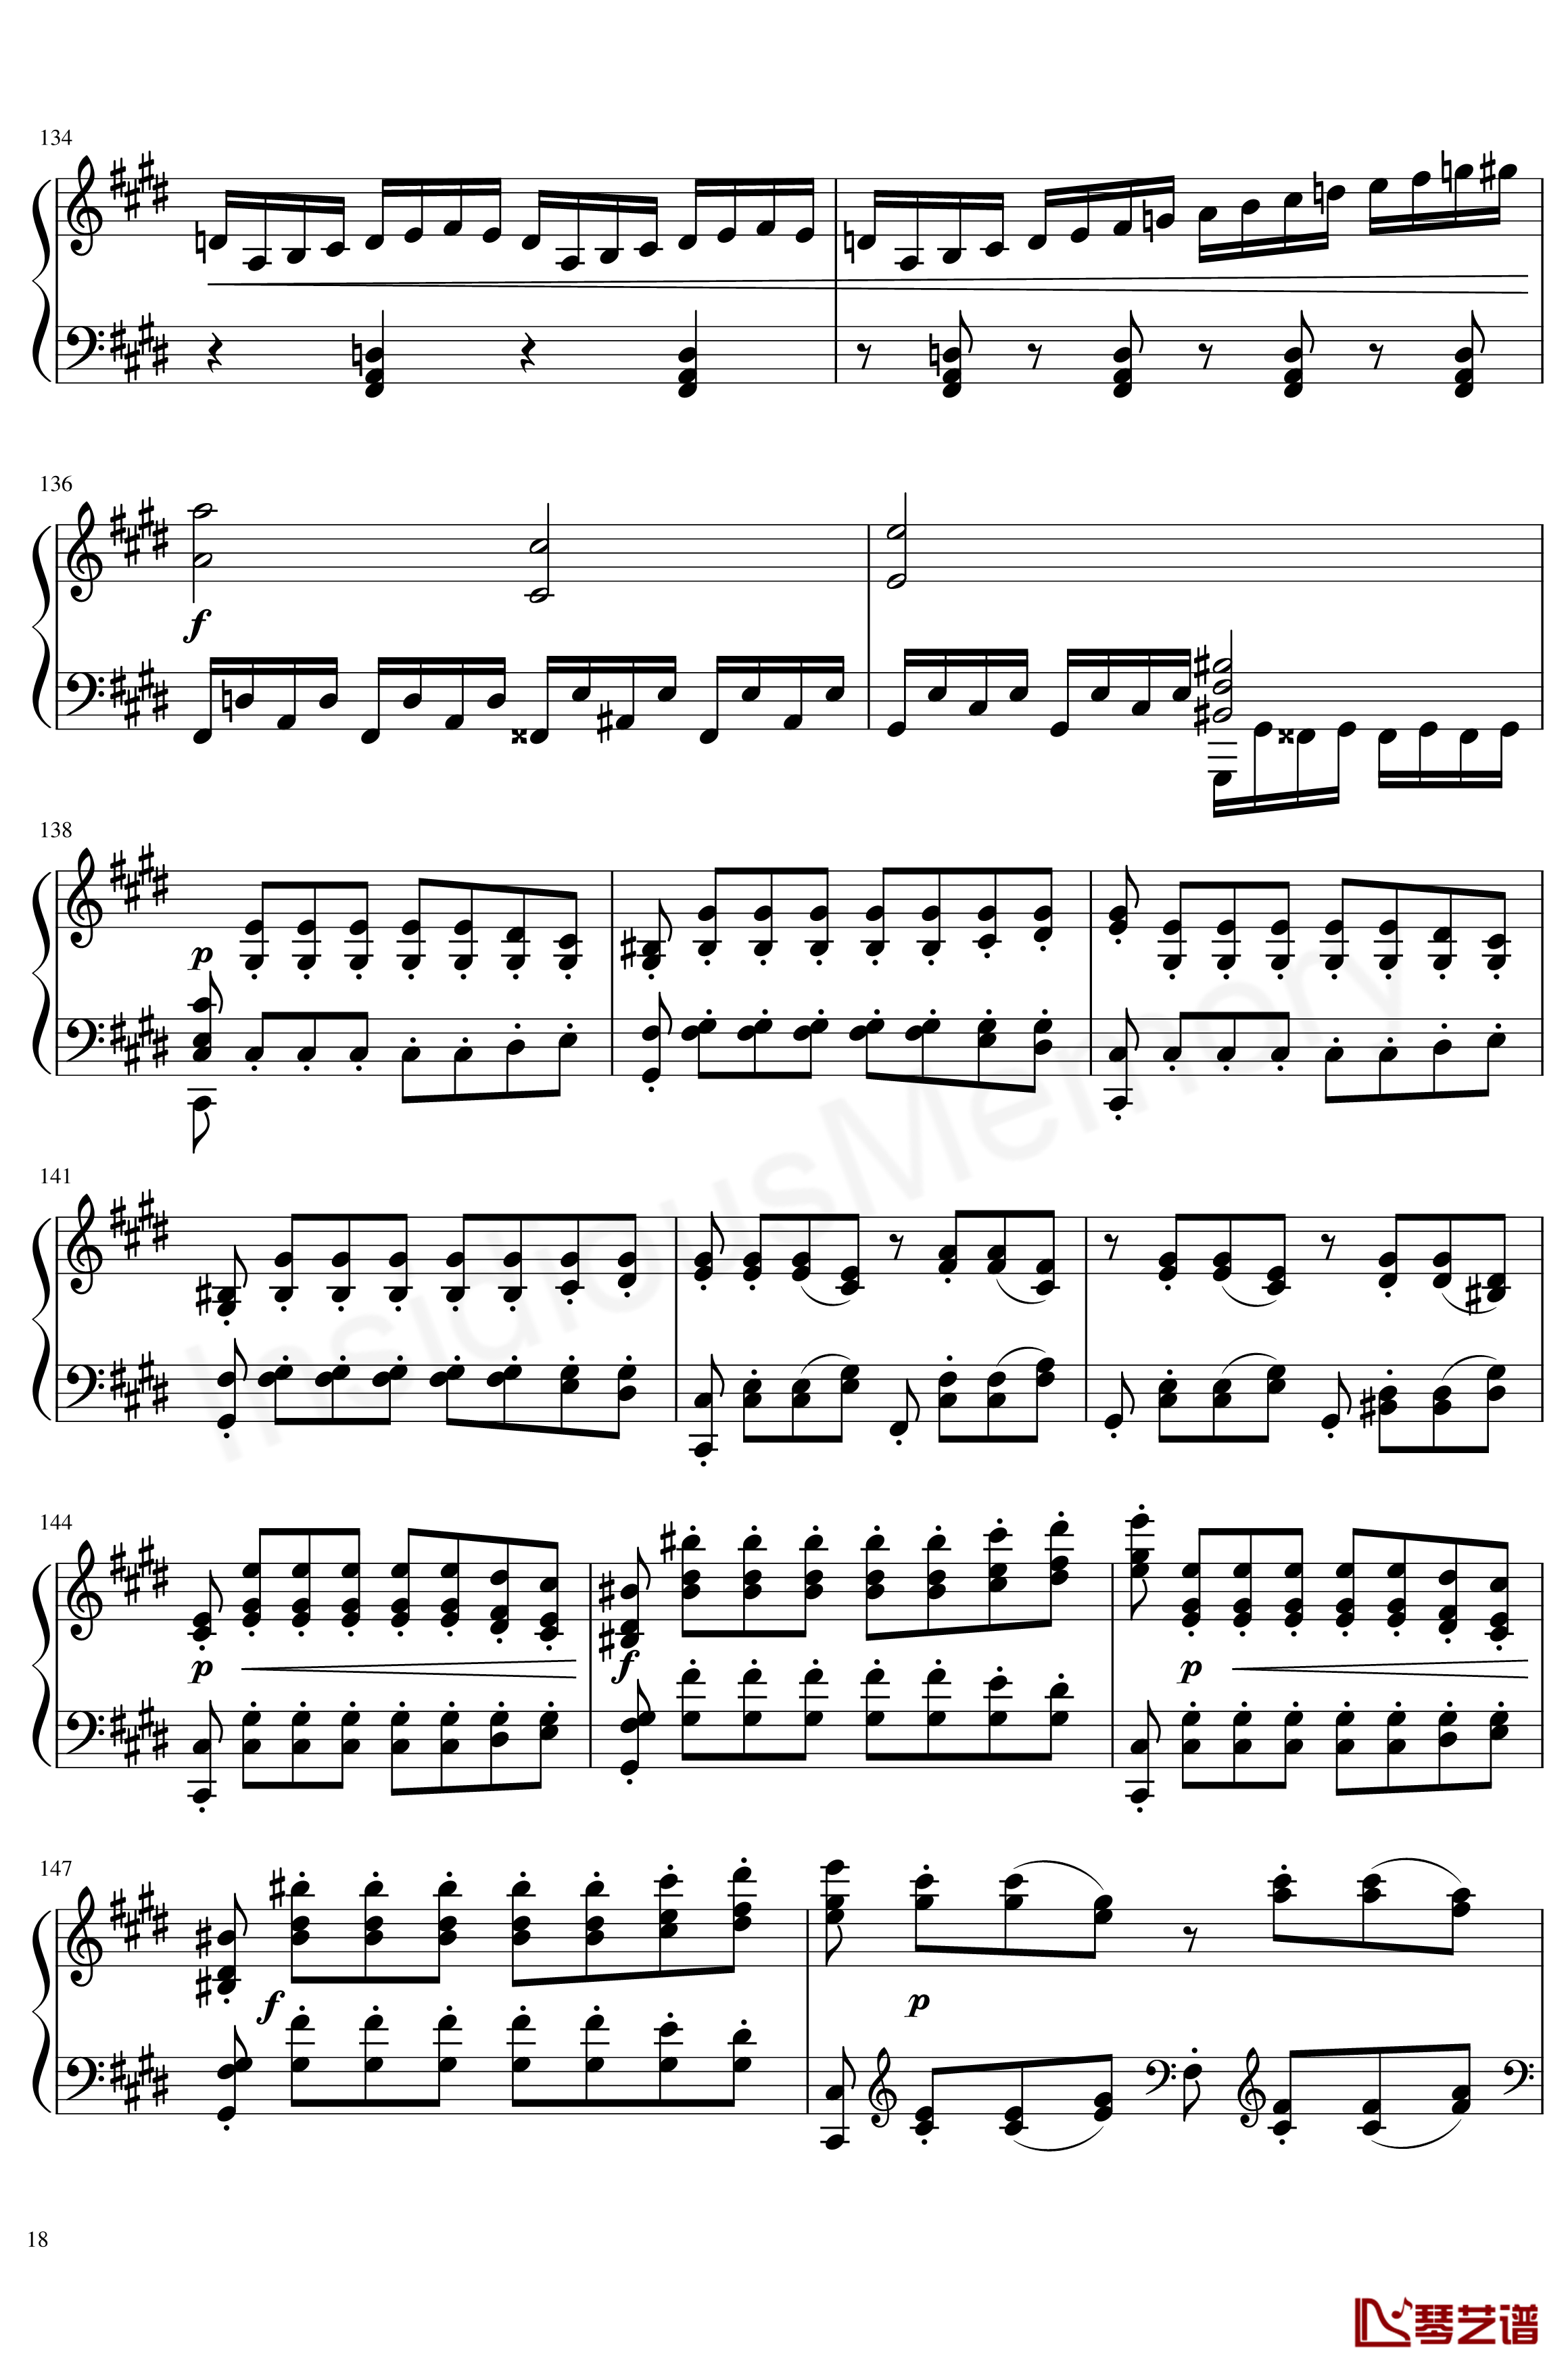 月光奏鸣曲钢琴谱-贝多芬-beethoven18